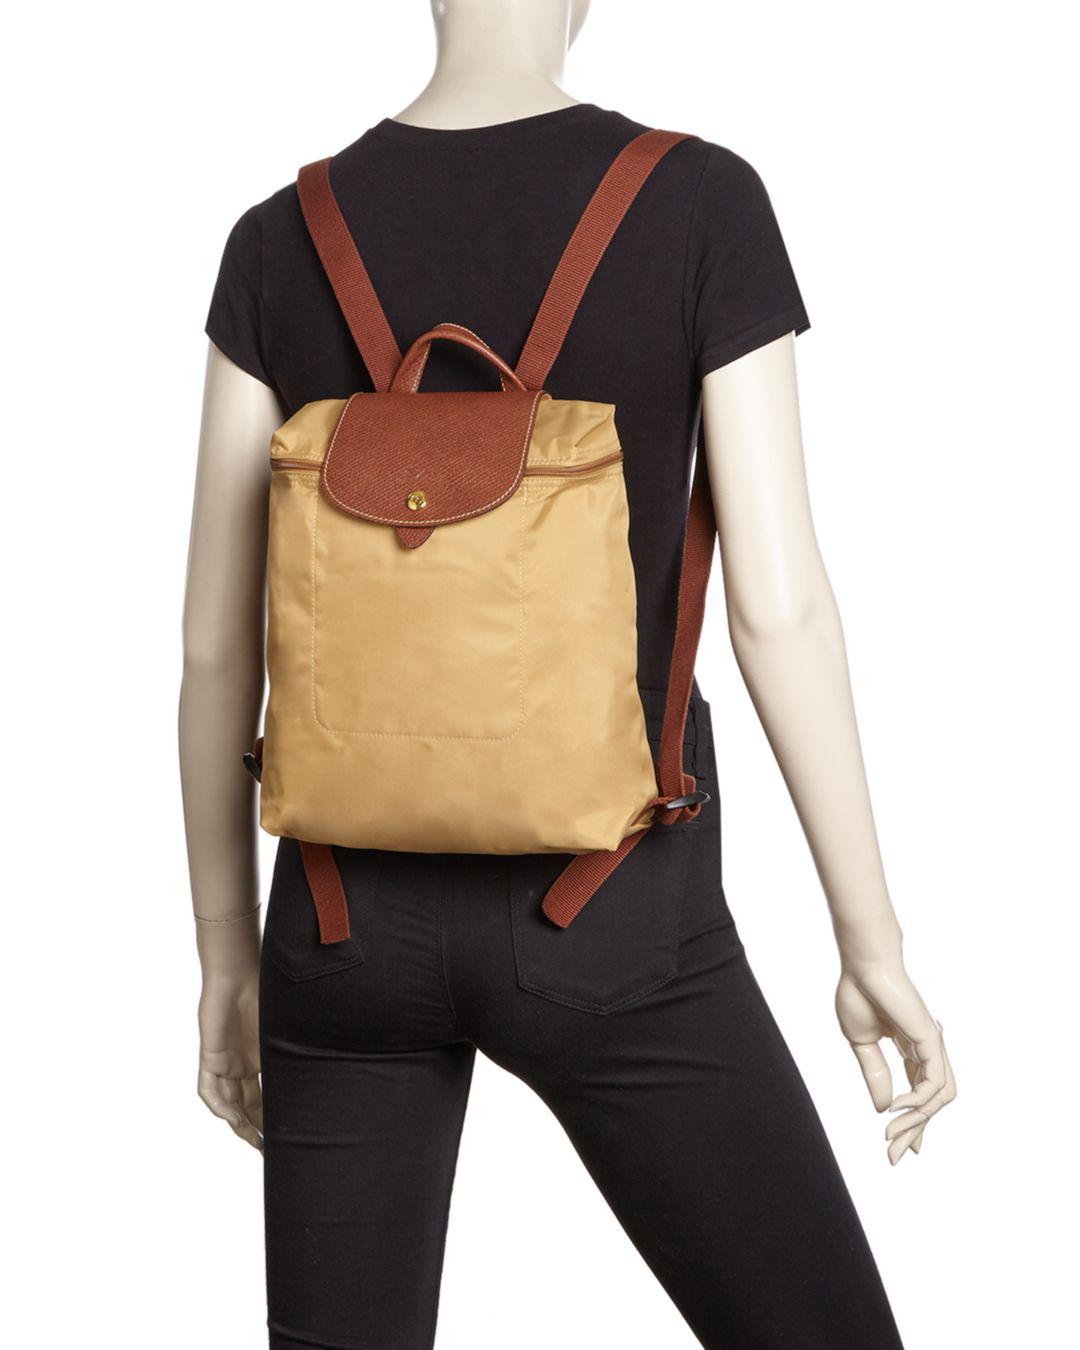 longchamp backpack honey